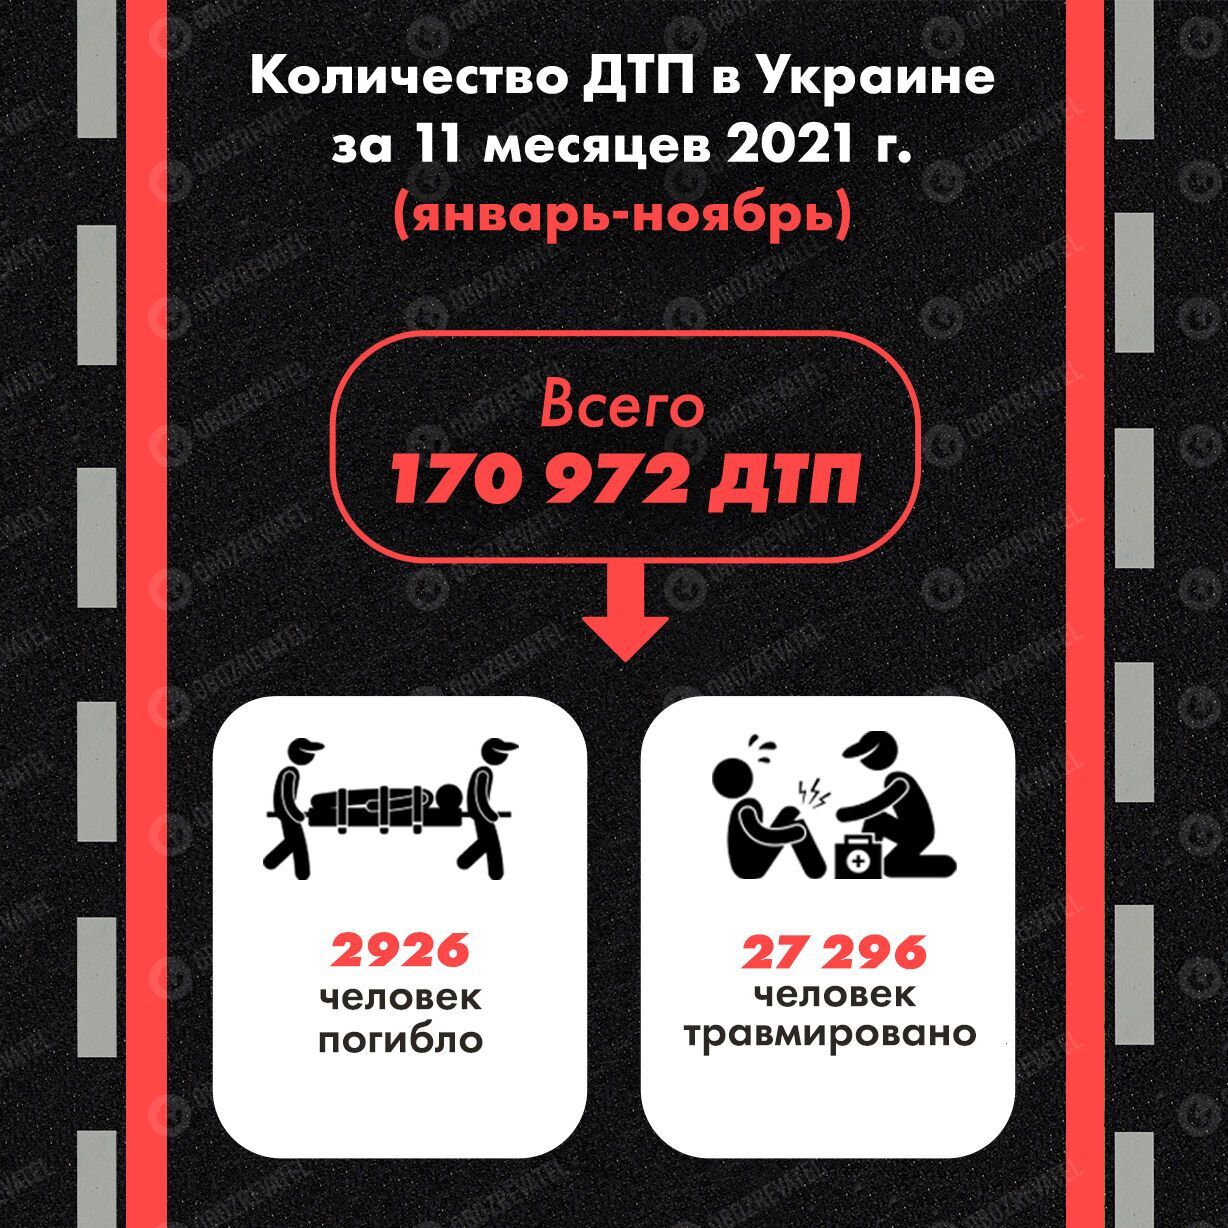 За 11 месяцев 2021 года в Украине произошла почти 171 тысяча аварий